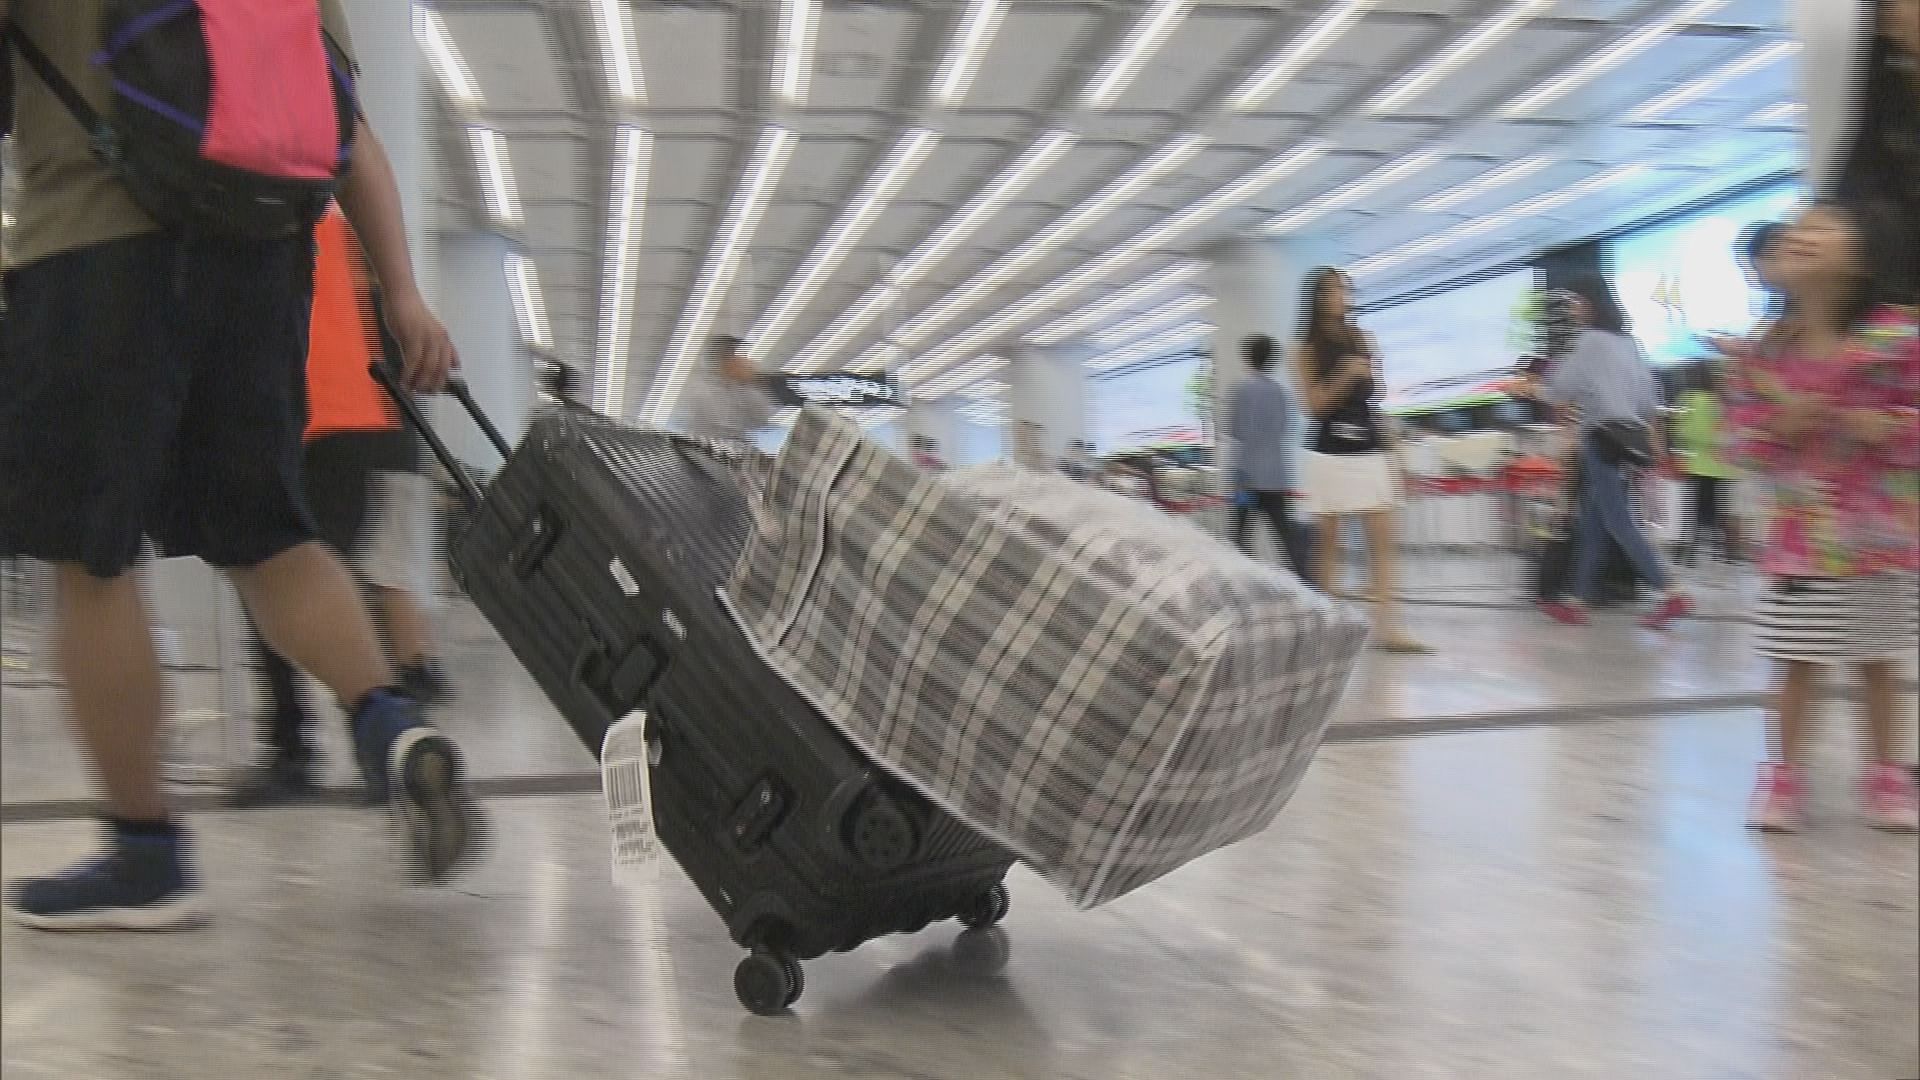 港鐵提供紅白藍膠袋供行李過大乘客組裝行李